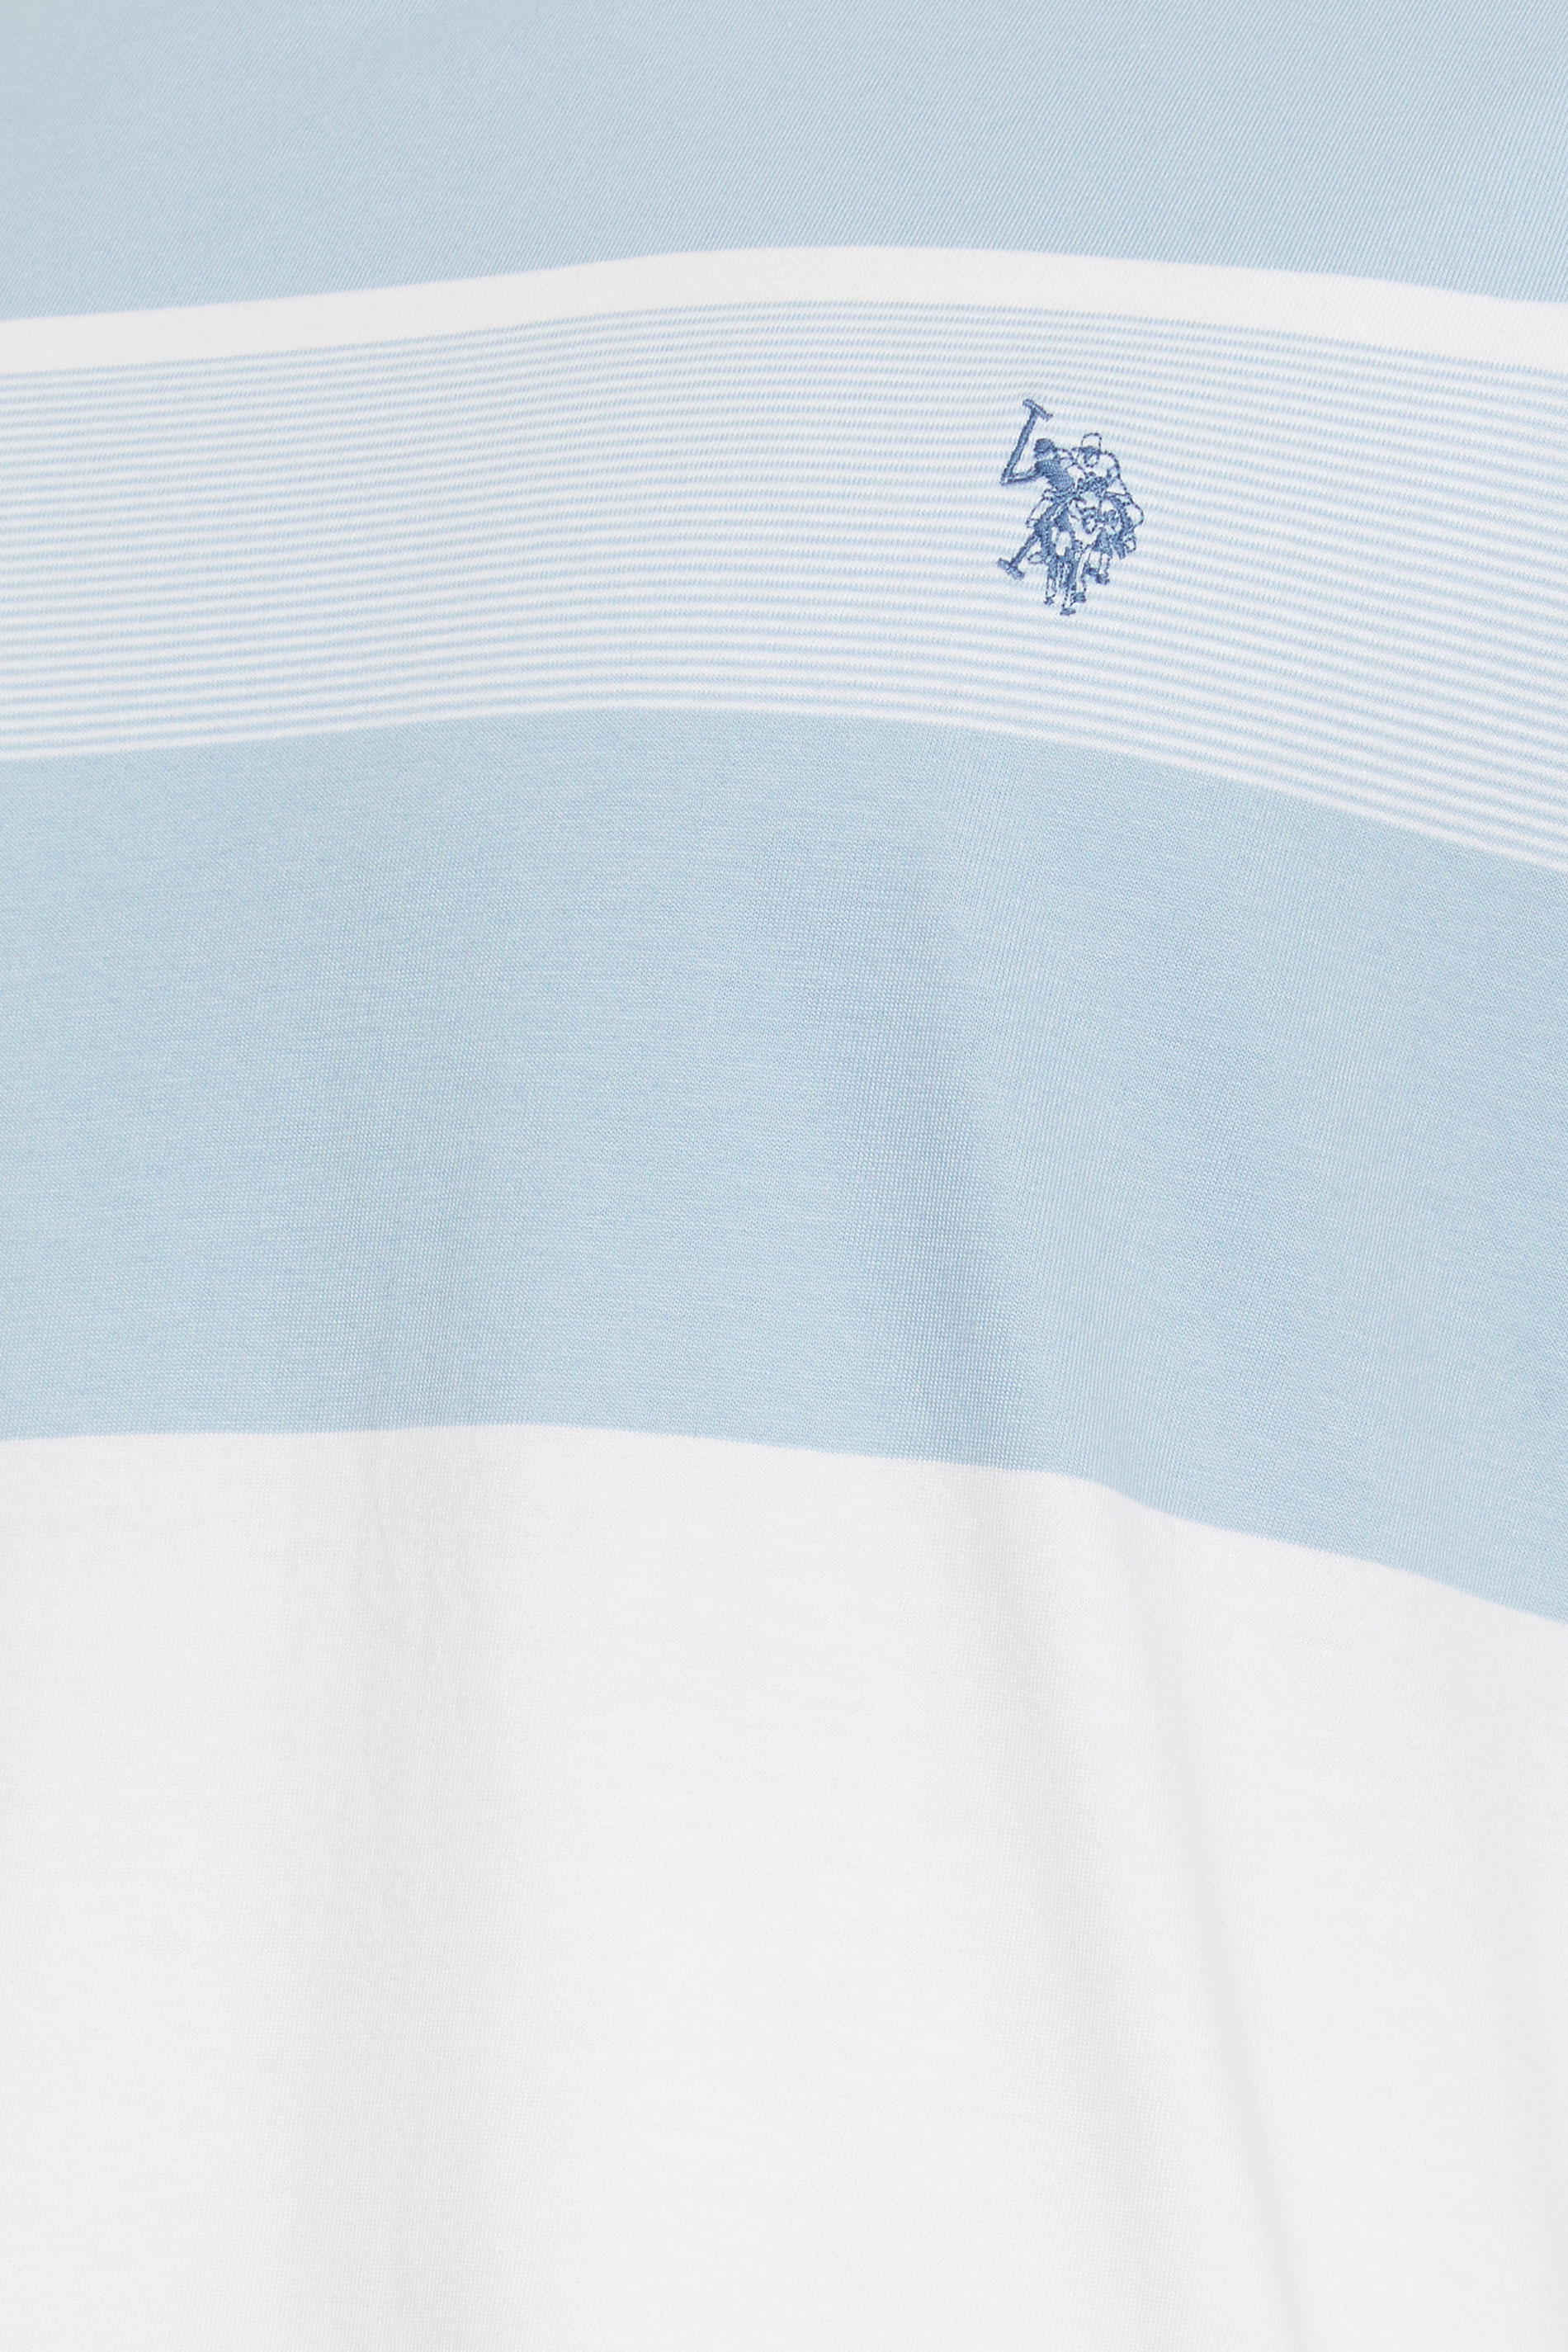 U.S. POLO ASSN. Big & Tall Blue & White Colour Block Stripe T-Shirt | BadRhino 2